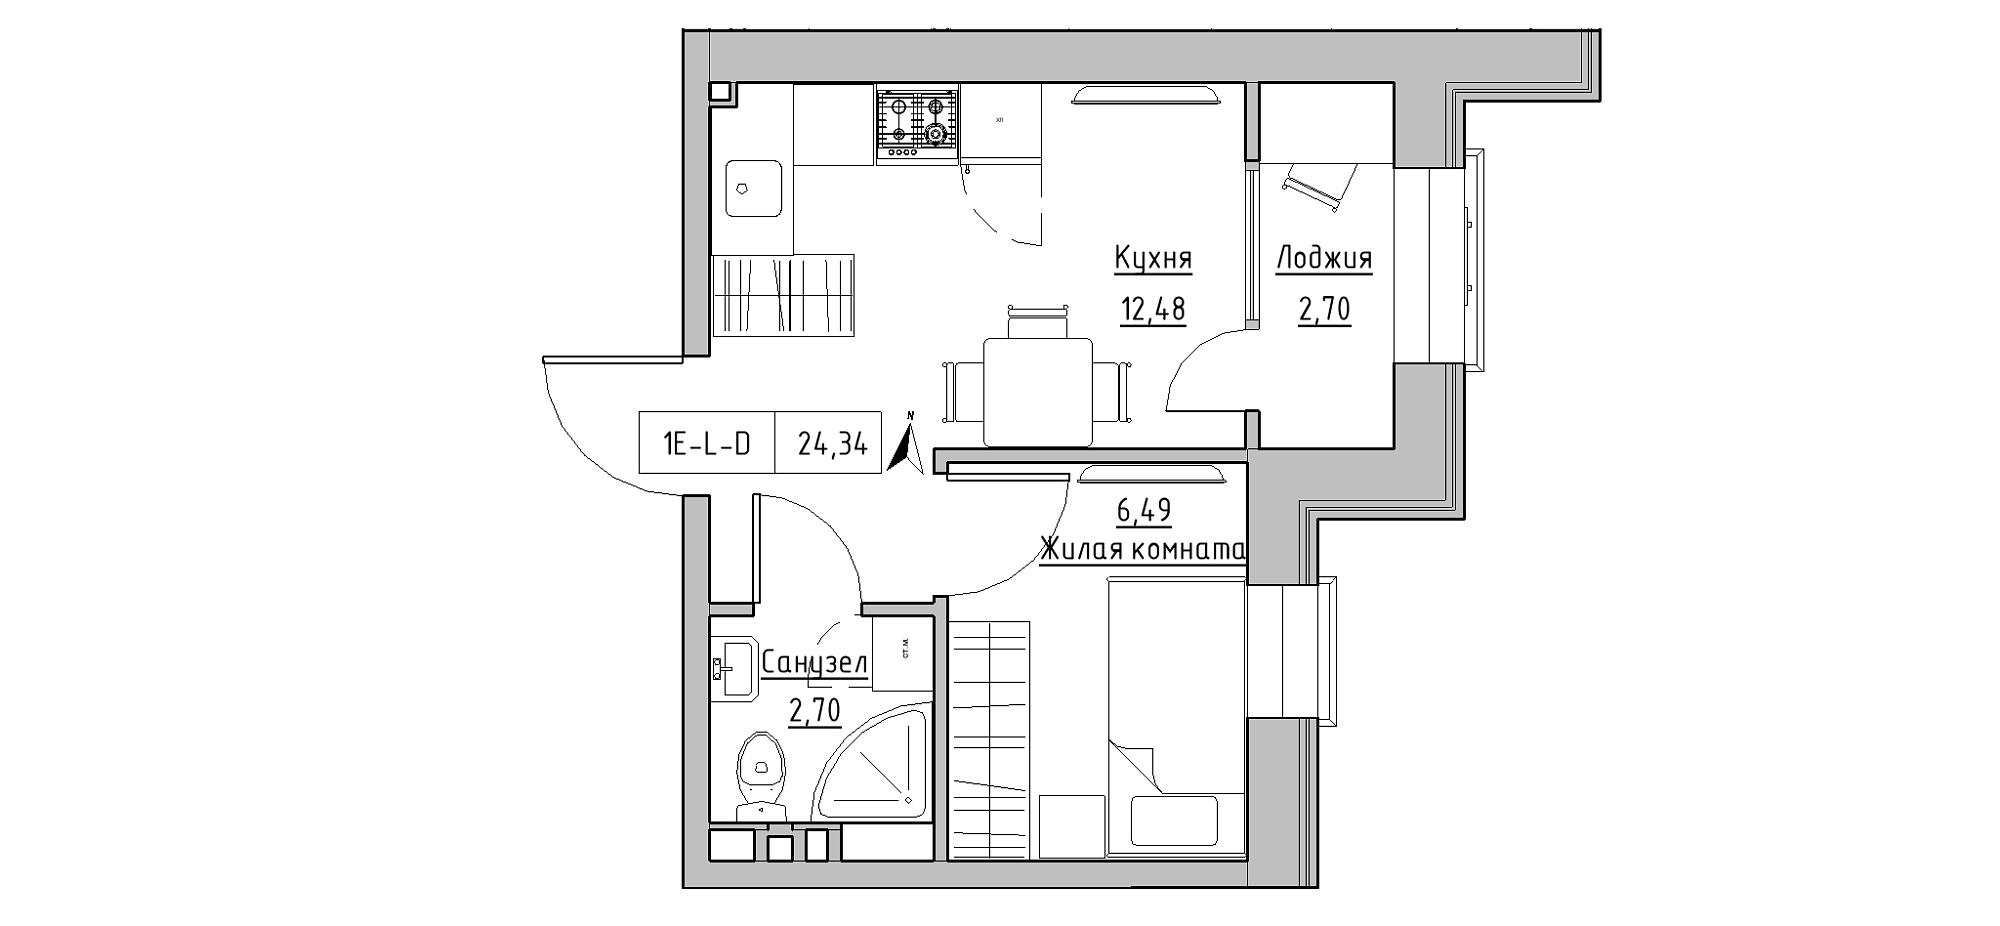 Планировка 1-к квартира площей 24.34м2, KS-020-02/0015.